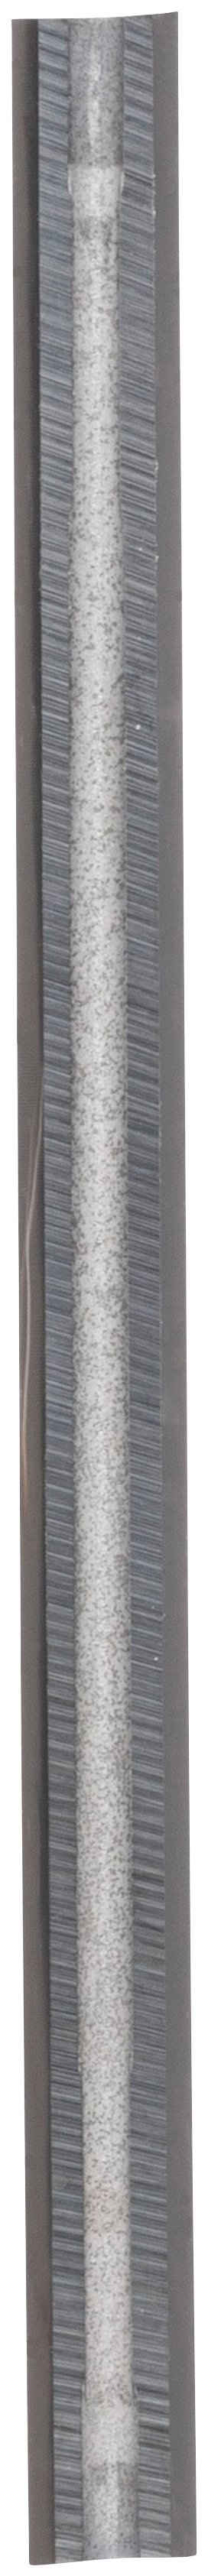 Bosch Professional Hobelmesser, 82 mm, scharf, gerade, Carbide, 40° Scharf, gerade, Carbide, 40°